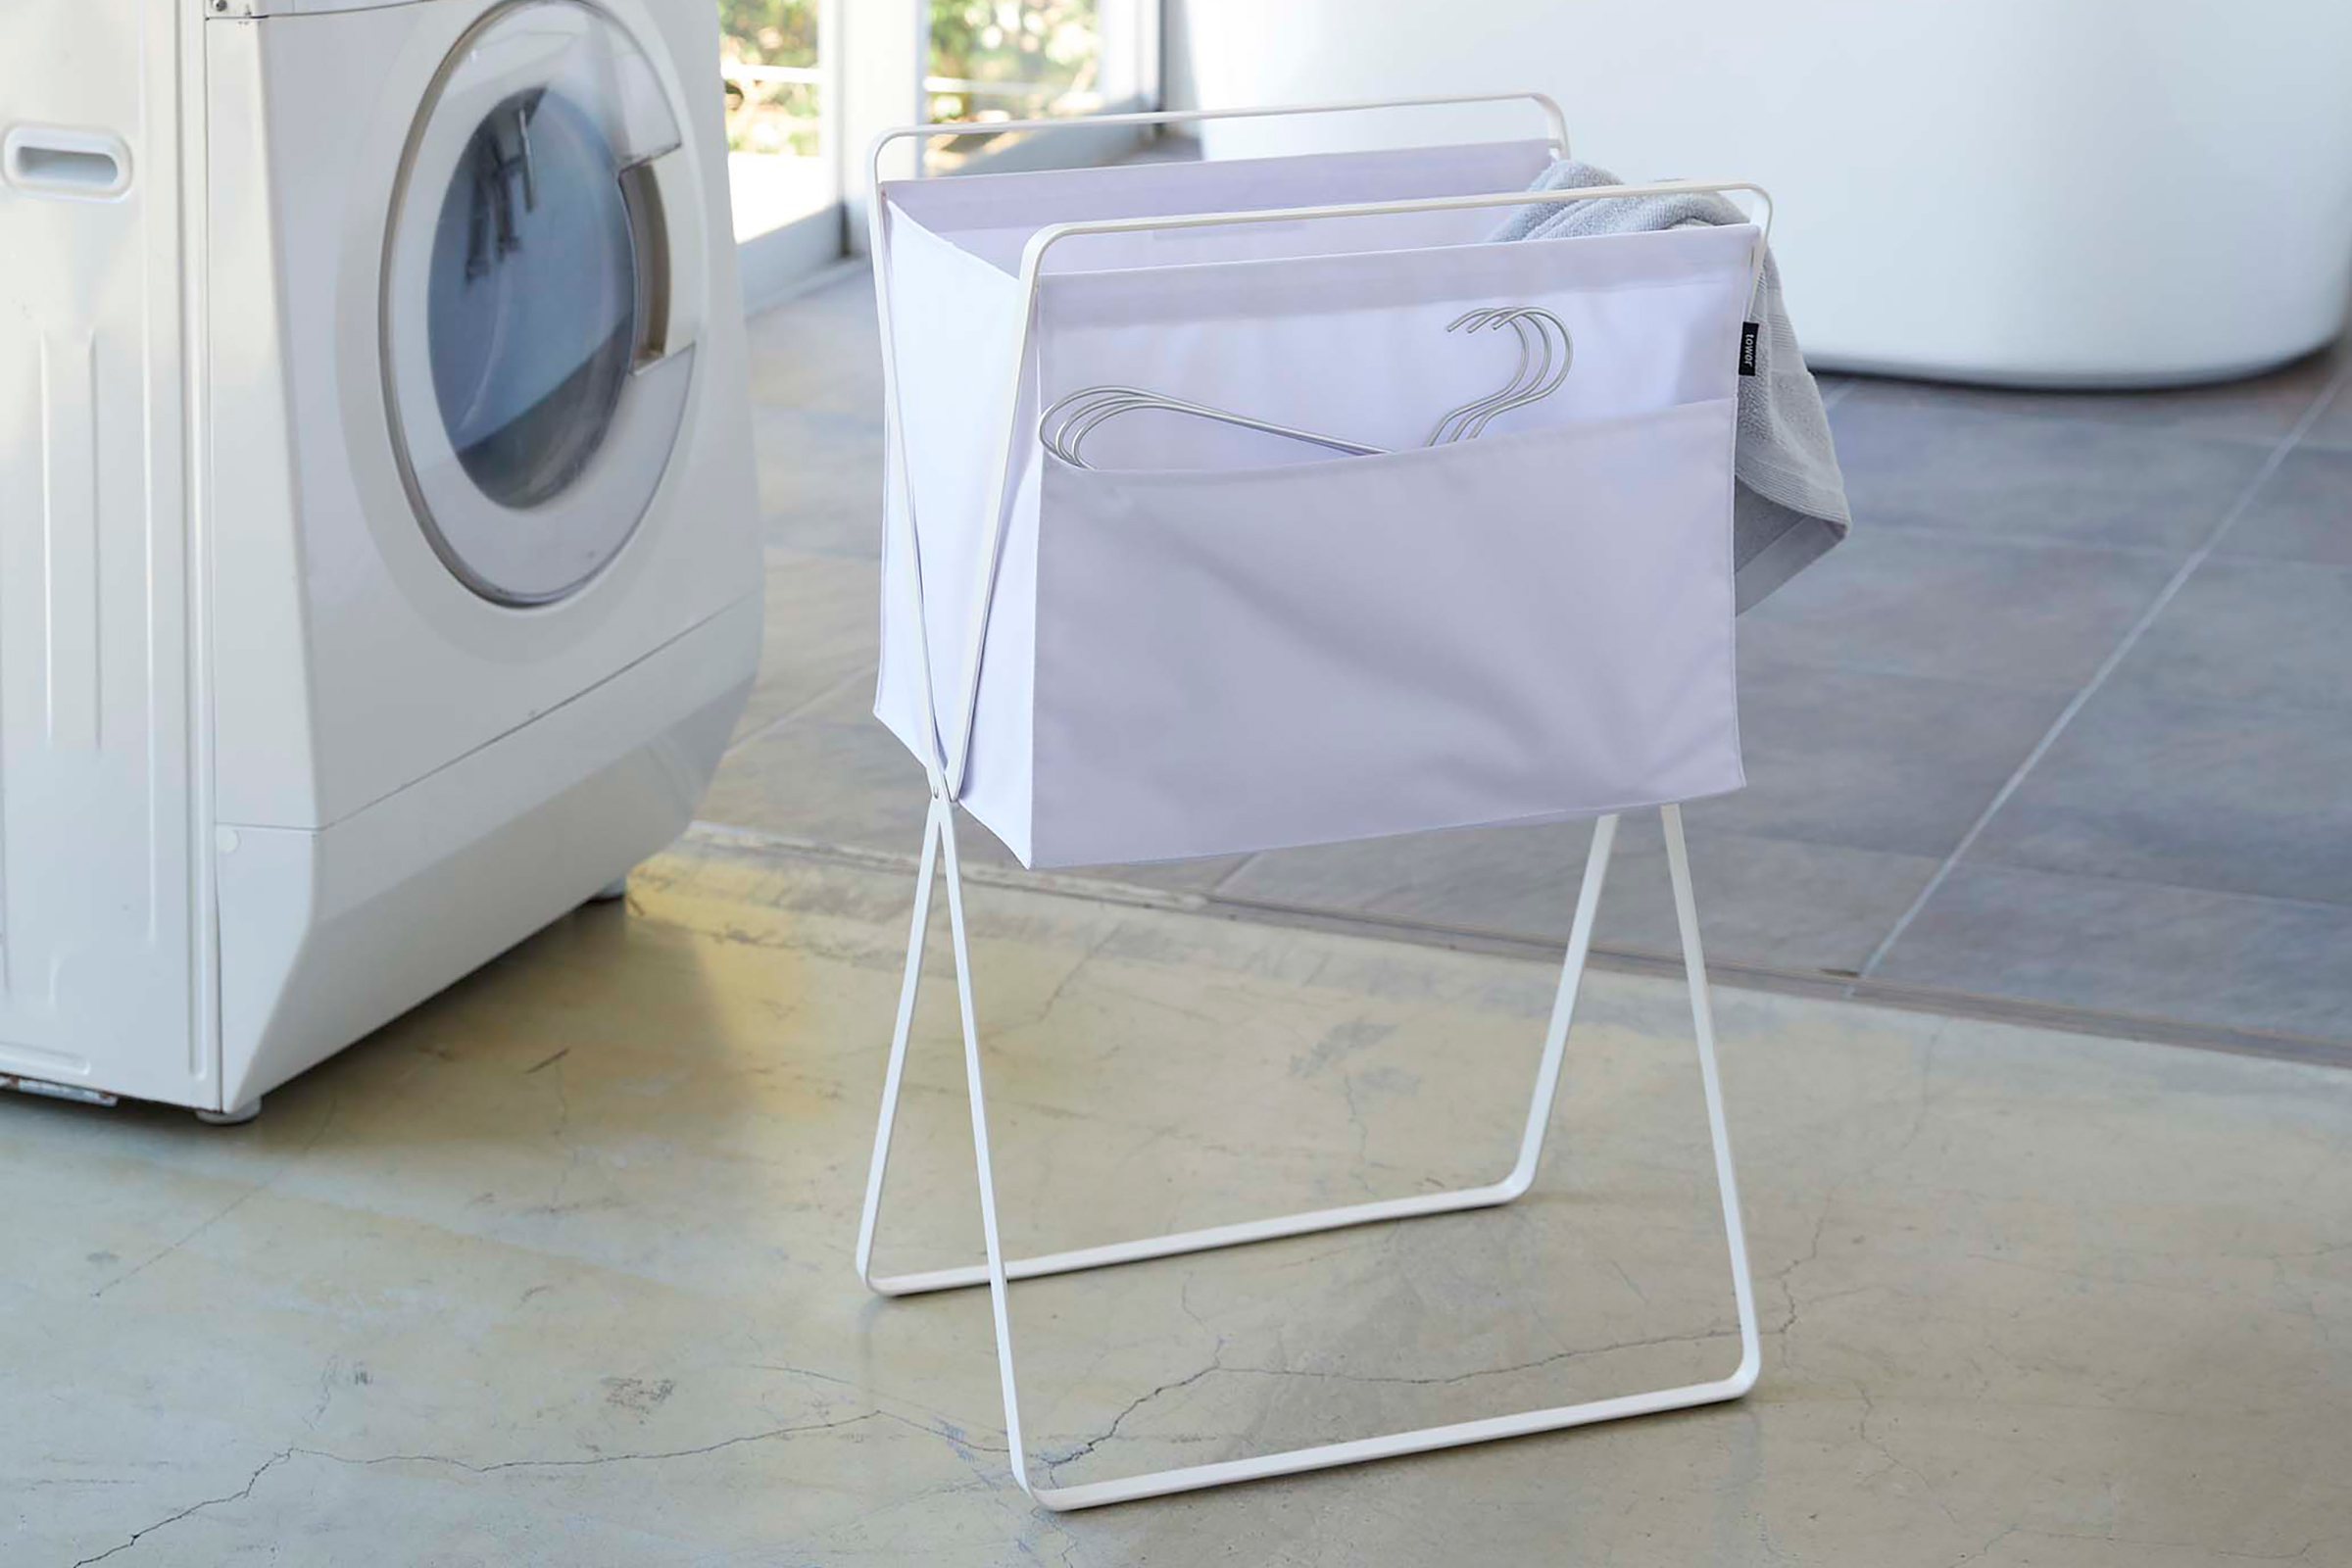 White Folding Laundry Basket beside a washing machine